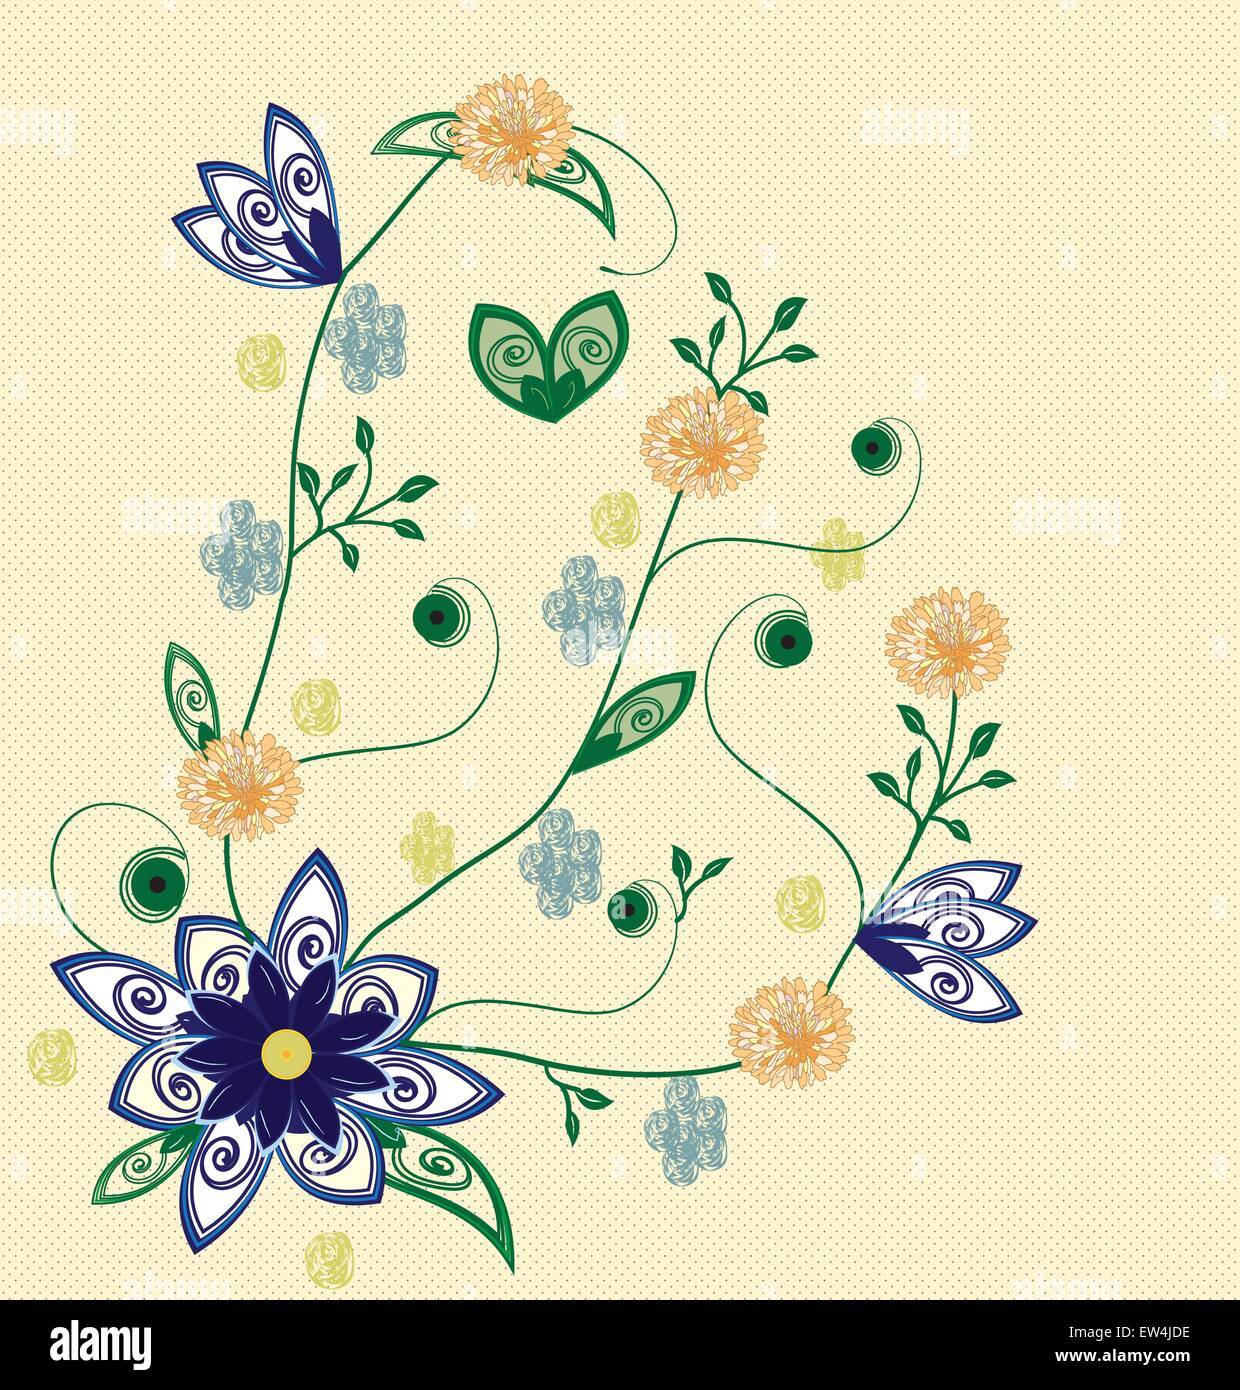 Vintage scheda invito ornato di eleganti astratta Retrò design floreale, royal blu e arancio fiori sul giallo pallido maglia indietro Illustrazione Vettoriale